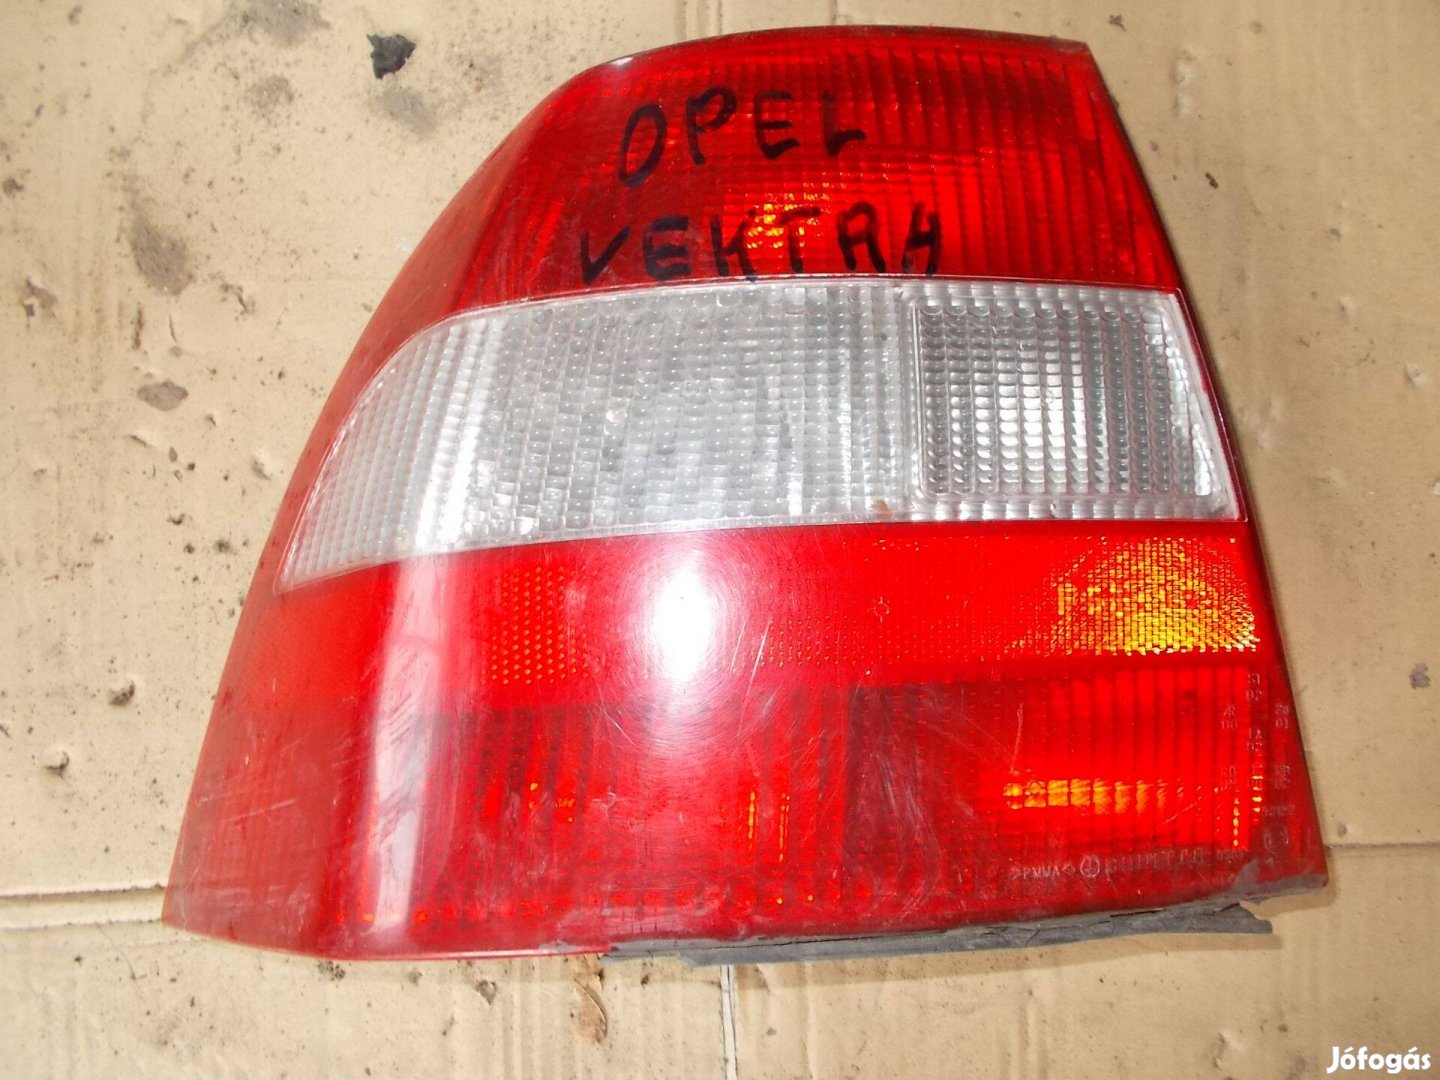 Eladó a képen látható opel vektra bontott hátsó lámpa